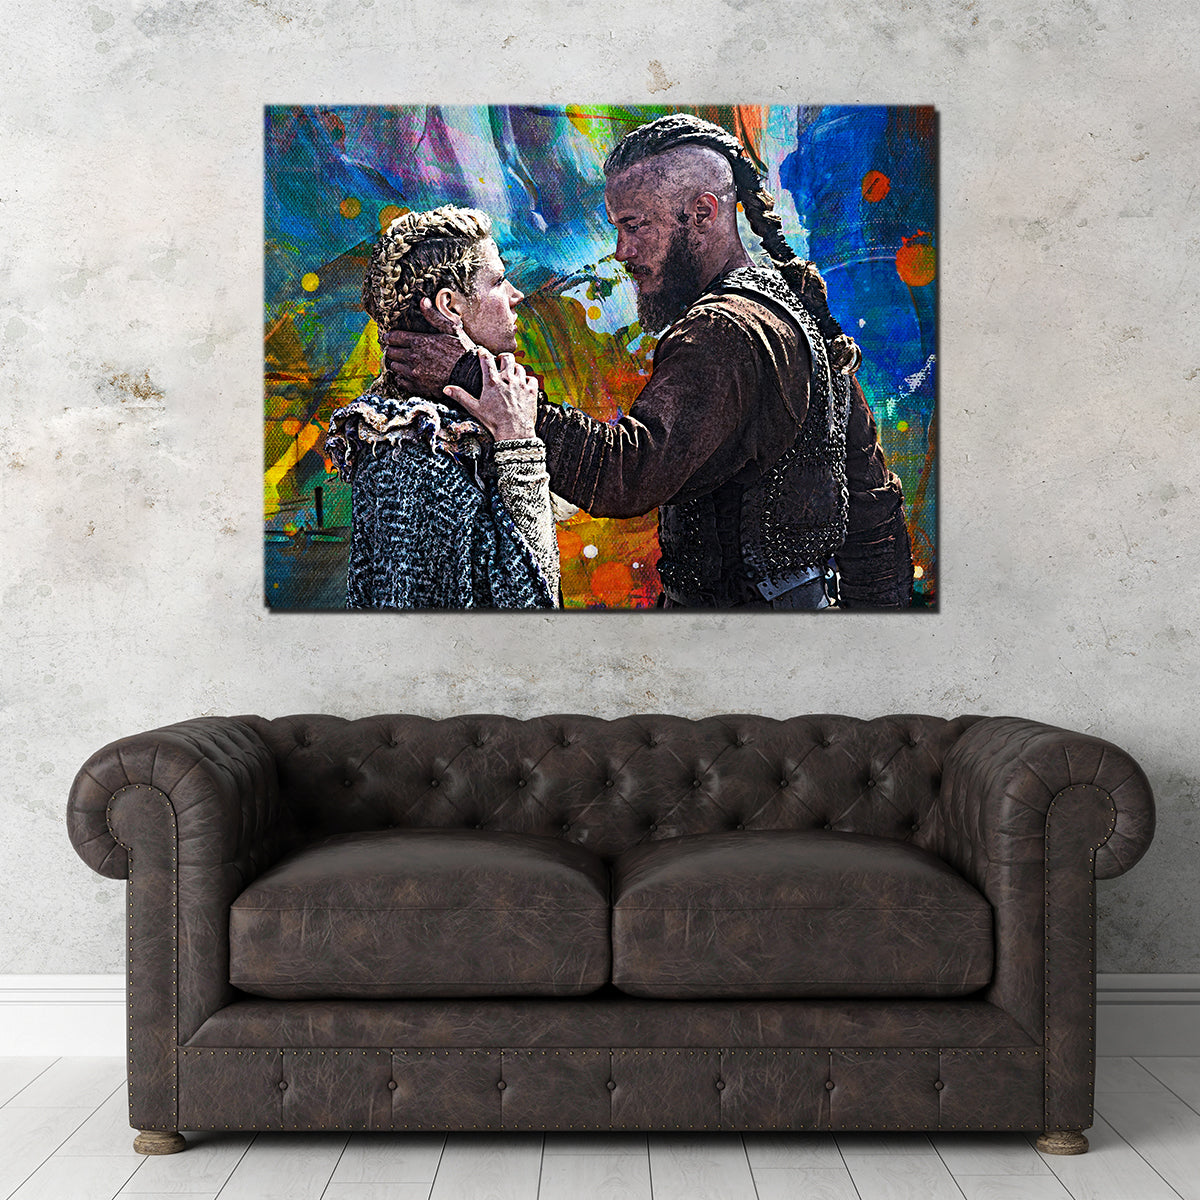 Ragnar & Lagertha